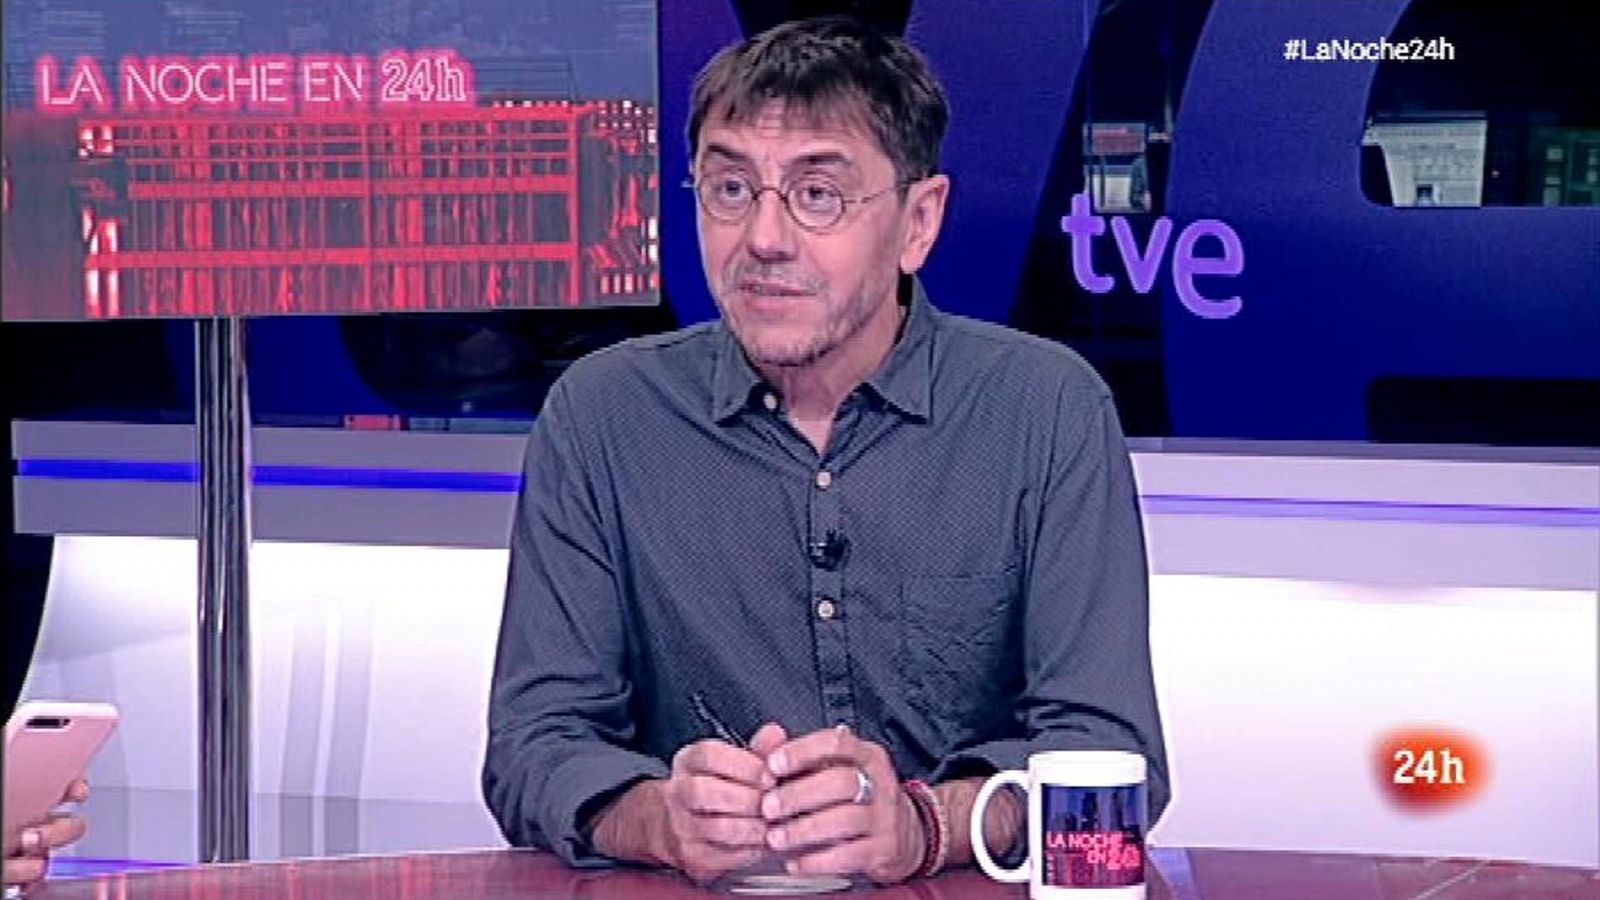 La noche en 24h: Juan Carlos Monedero: "Echenique ha estado sobrecargado de tareas" | RTVE Play